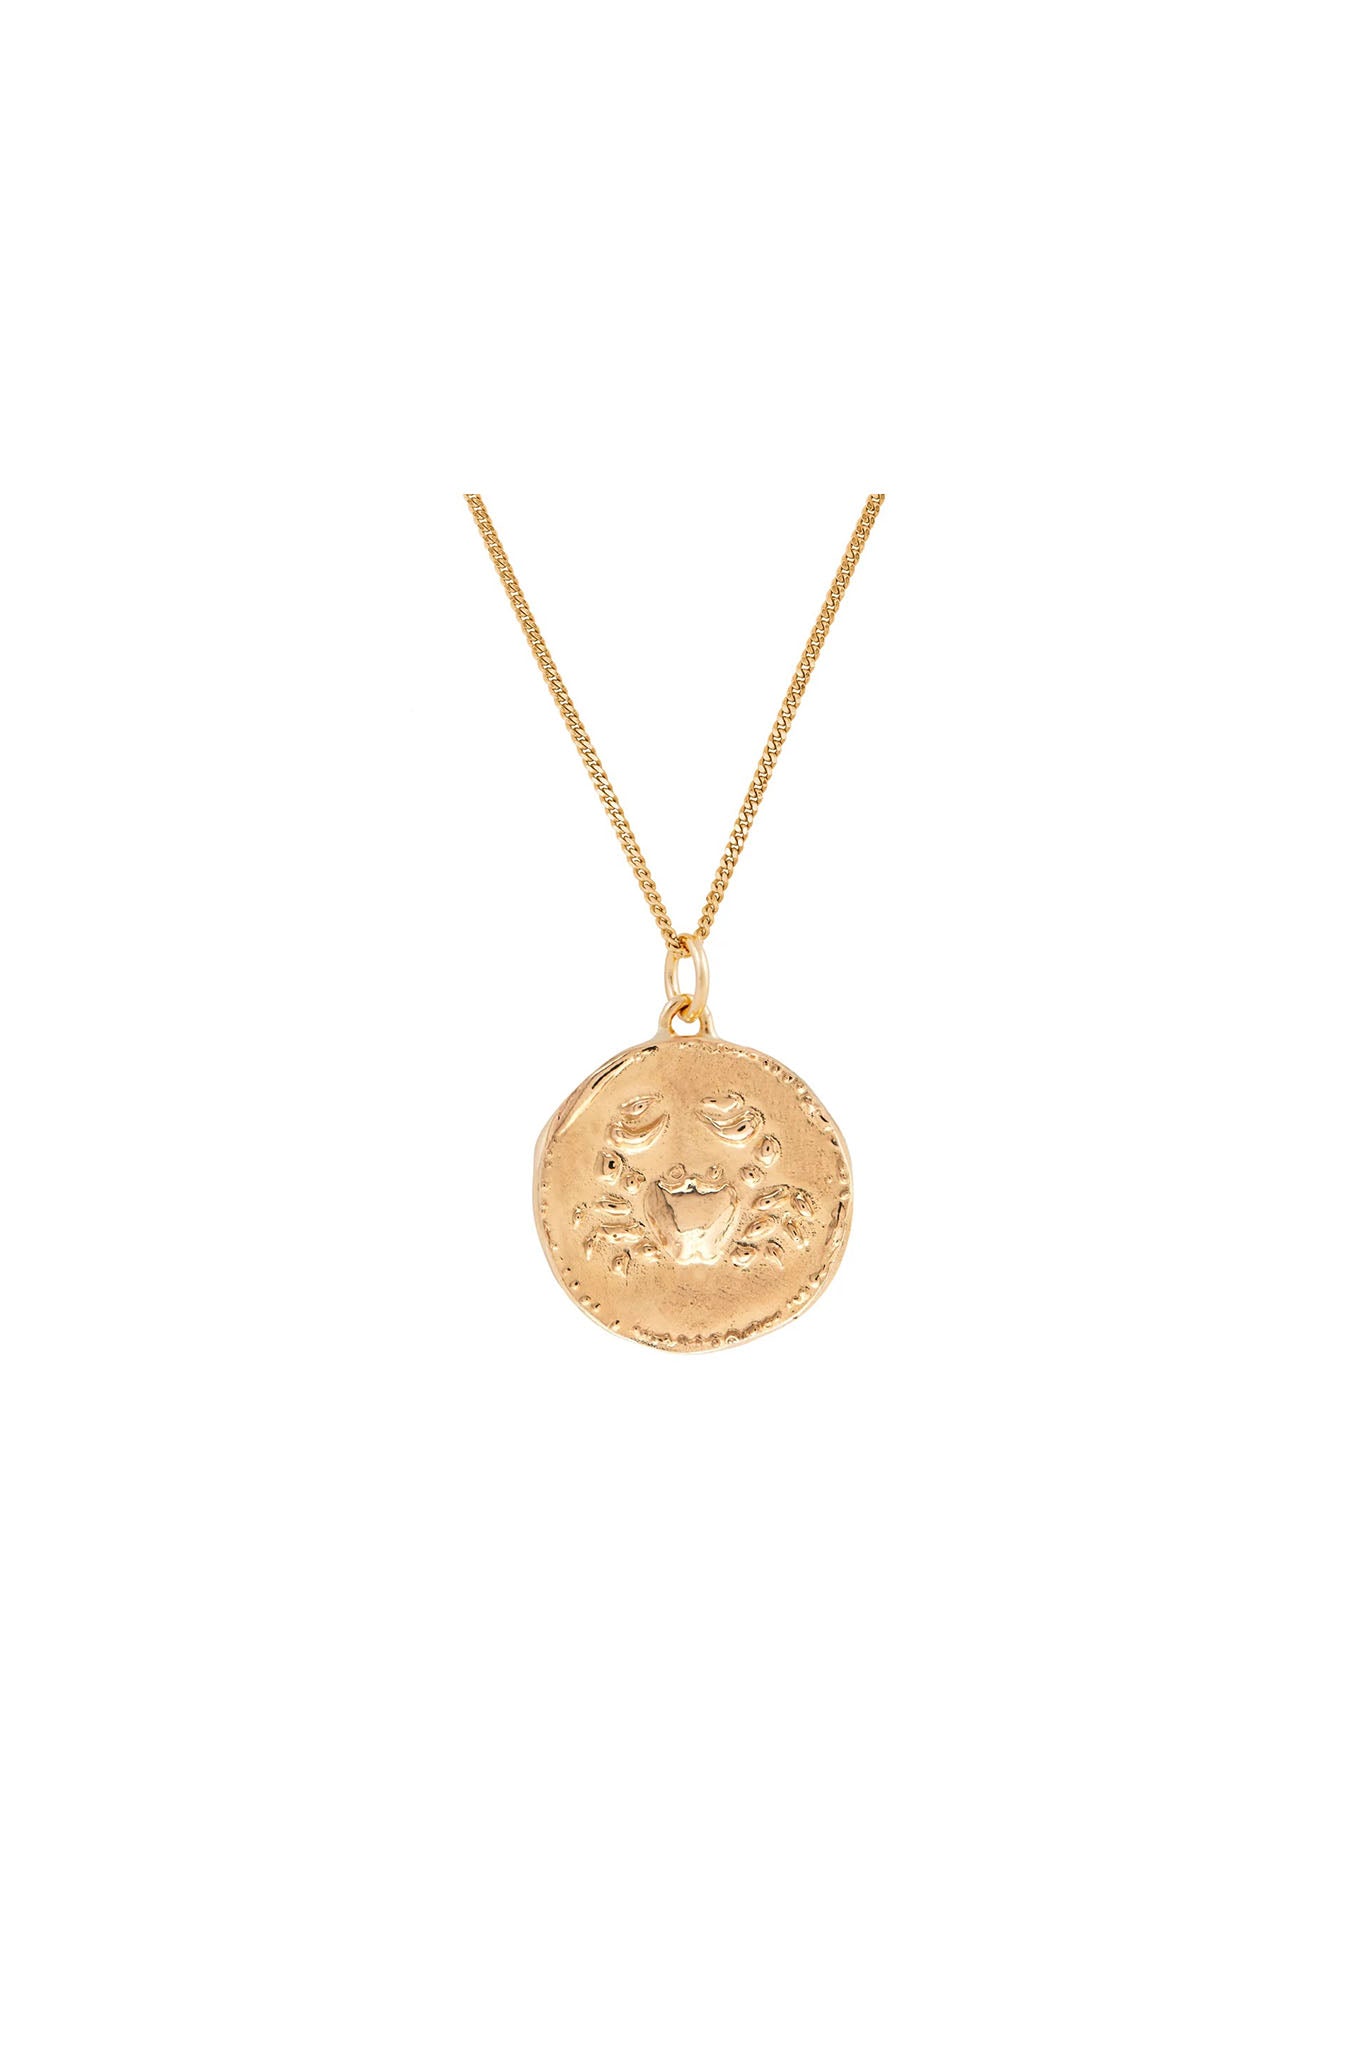 Zodiac Cancer Coin Necklace